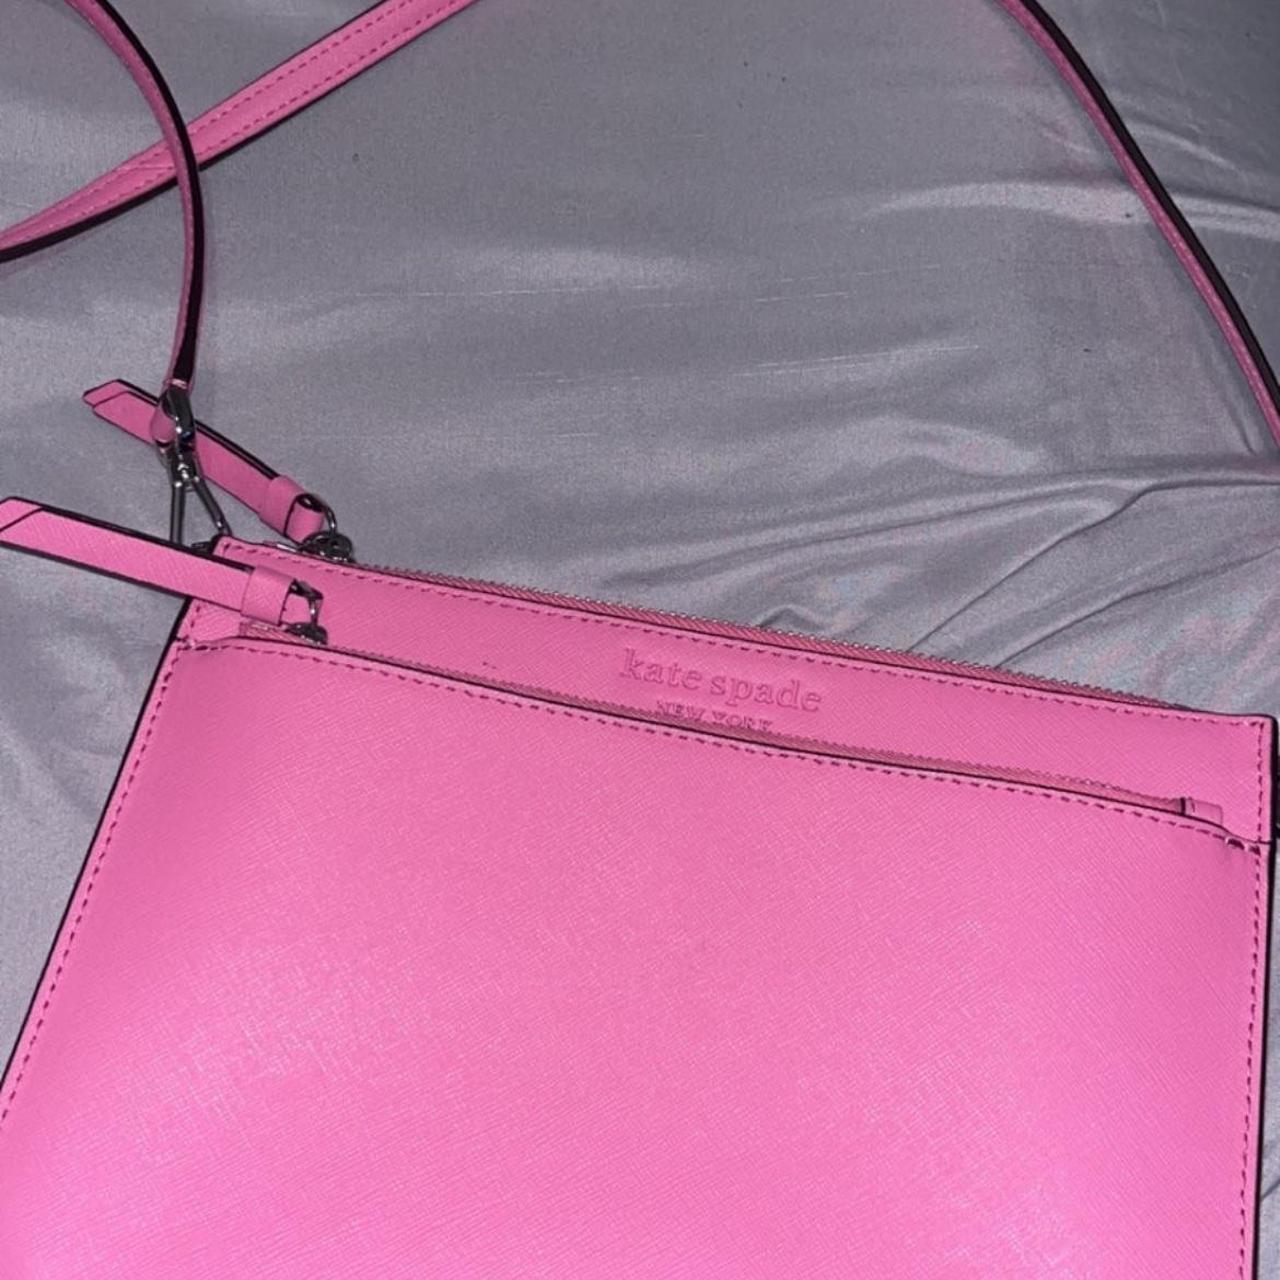 Hot pink vinyl KATE SPADE tote bag This bag is in - Depop